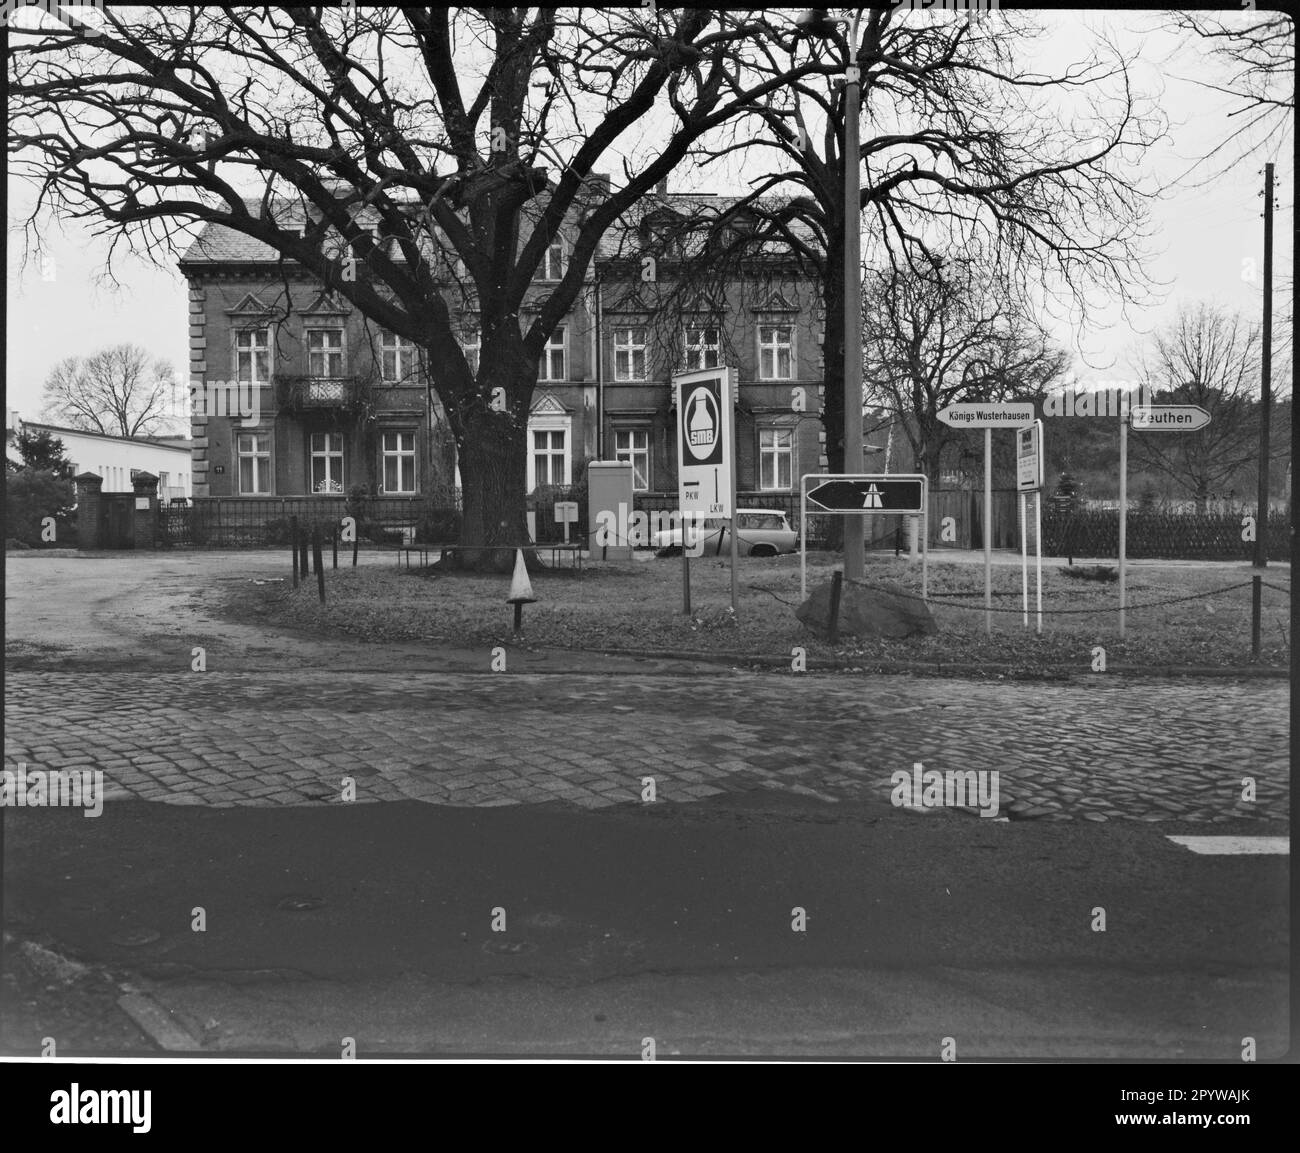 Attraversamento stradale con albero e segnaletica in inverno. Wildau, distretto di Dahme-Spreewald, Brandeburgo. Foto, 1993. Foto Stock